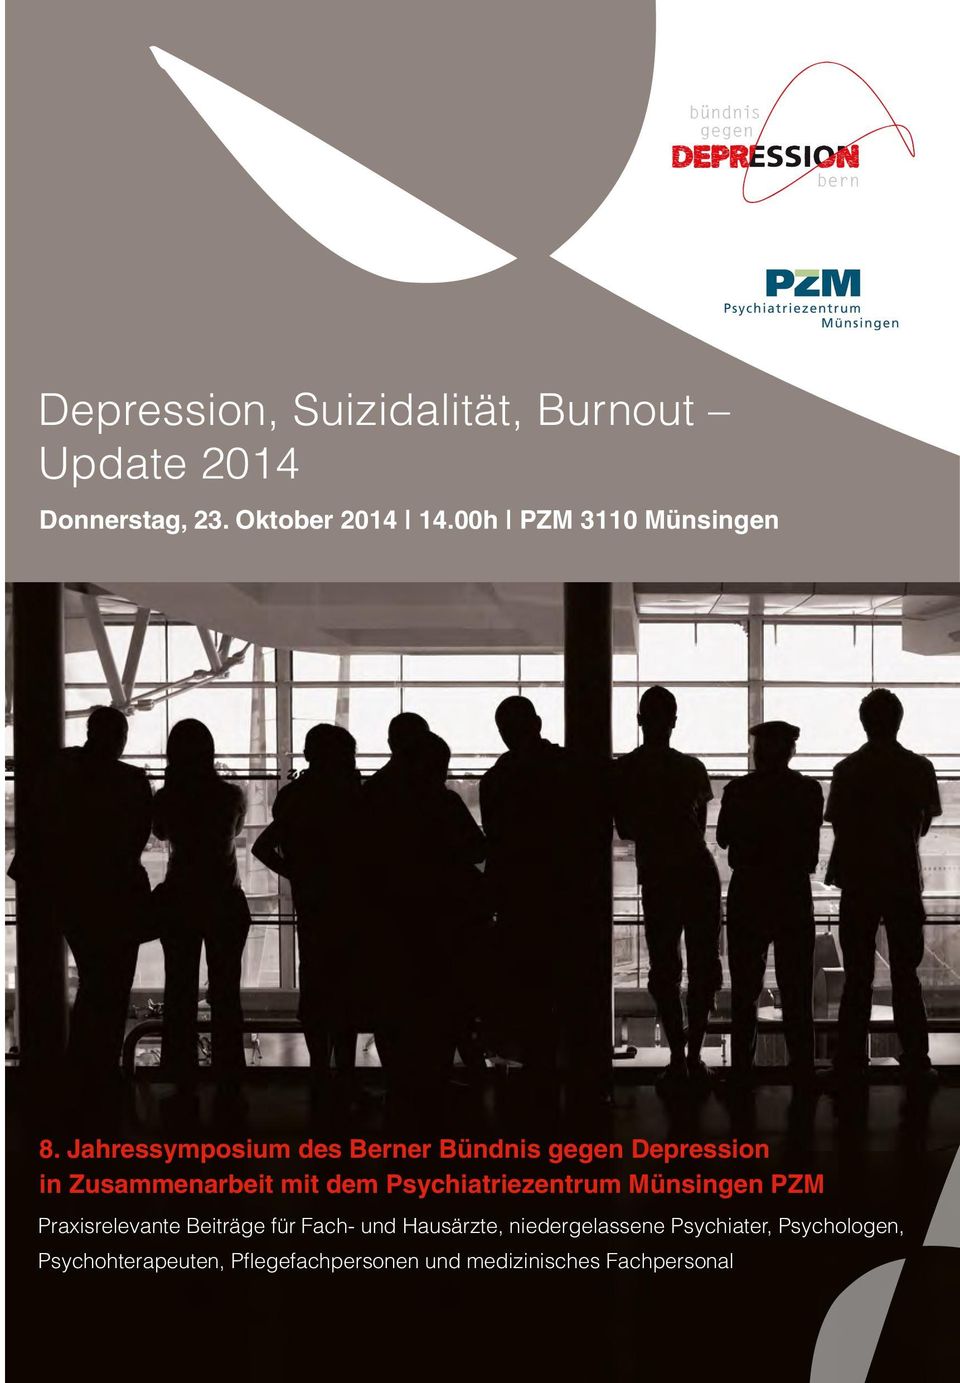 Jahressymposium des Berner Bündnis gegen Depression in Zusammenarbeit mit dem